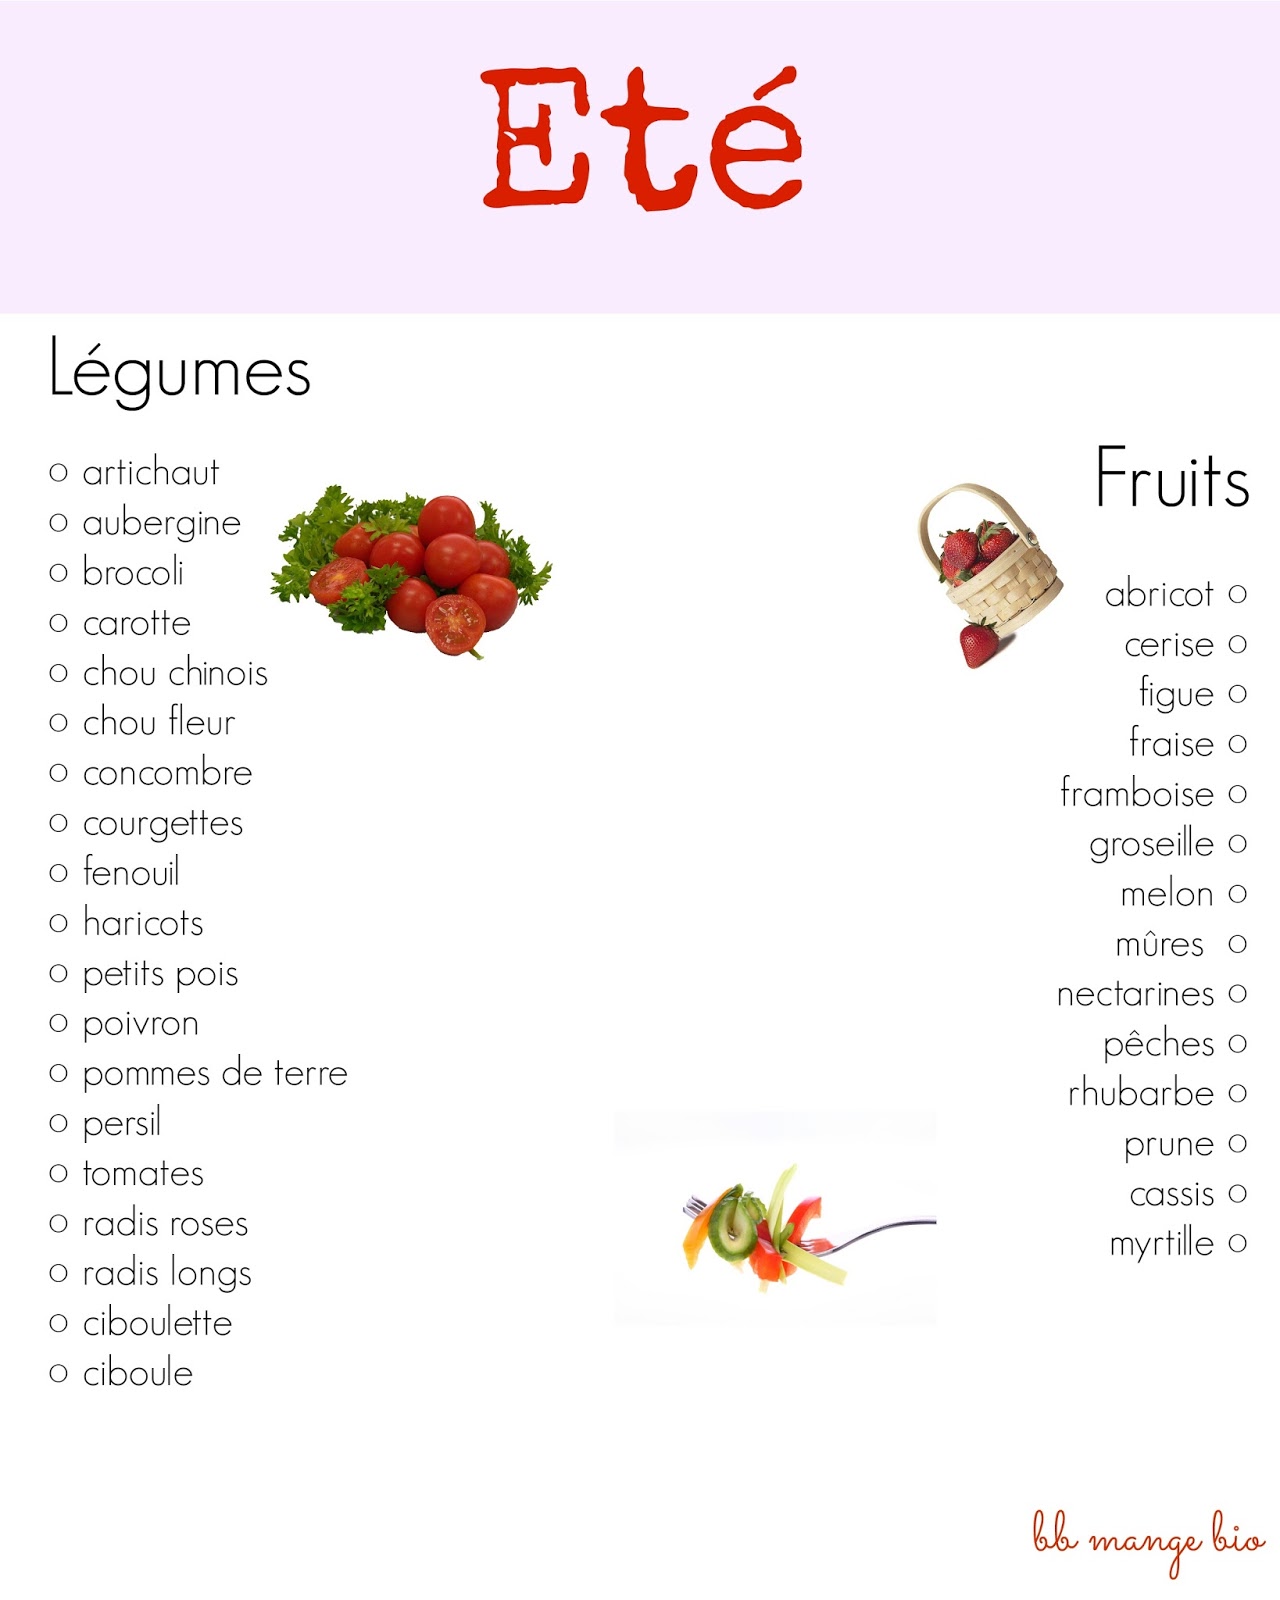 BB mange bio: Les fruits les légumes de saison